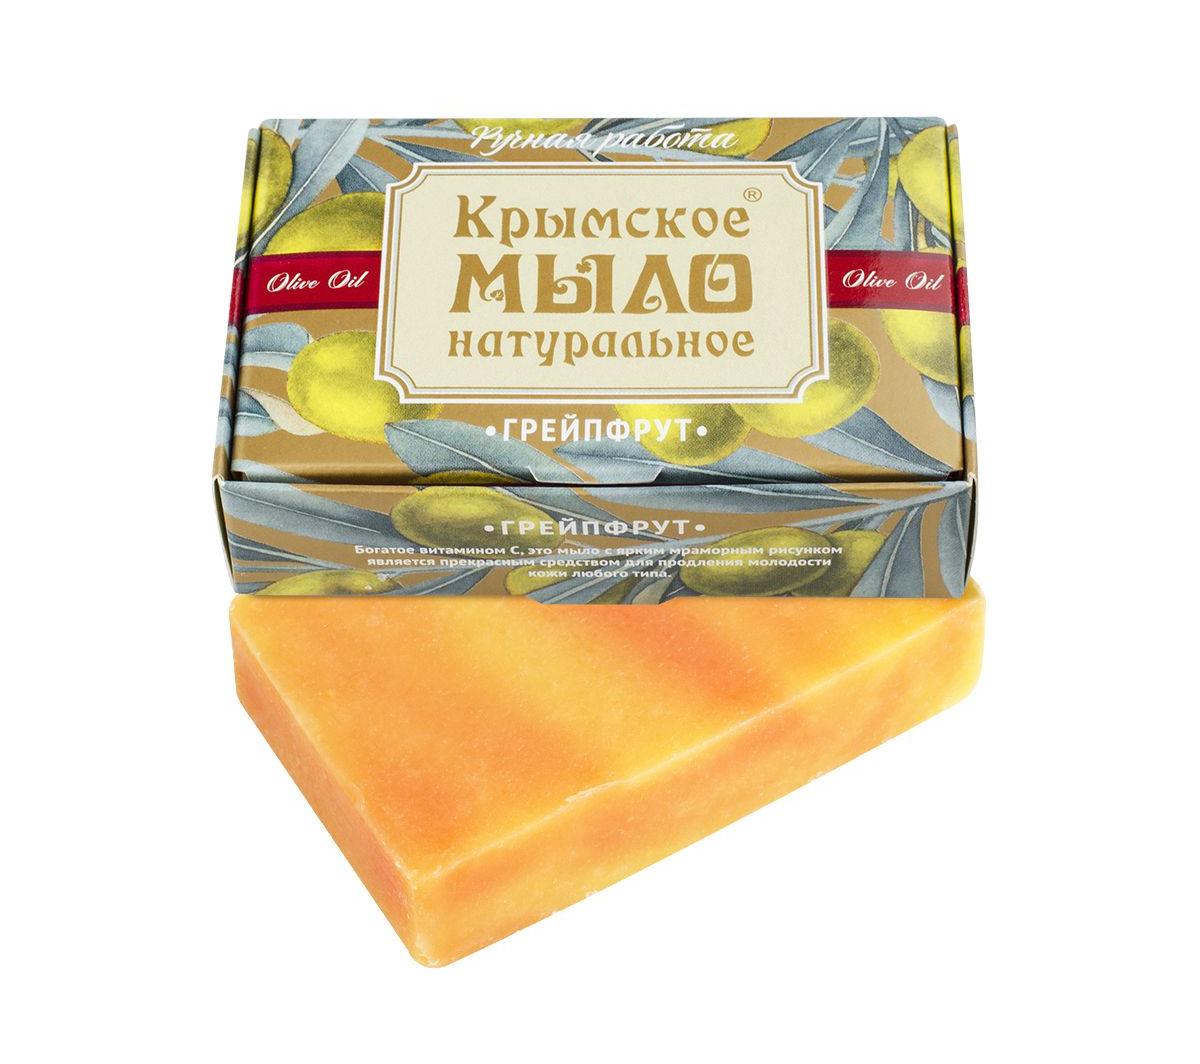 Крымское натуральное мыло на оливковом масле ГРЕЙПФРУТ,100г купить в онлайн экомаркете